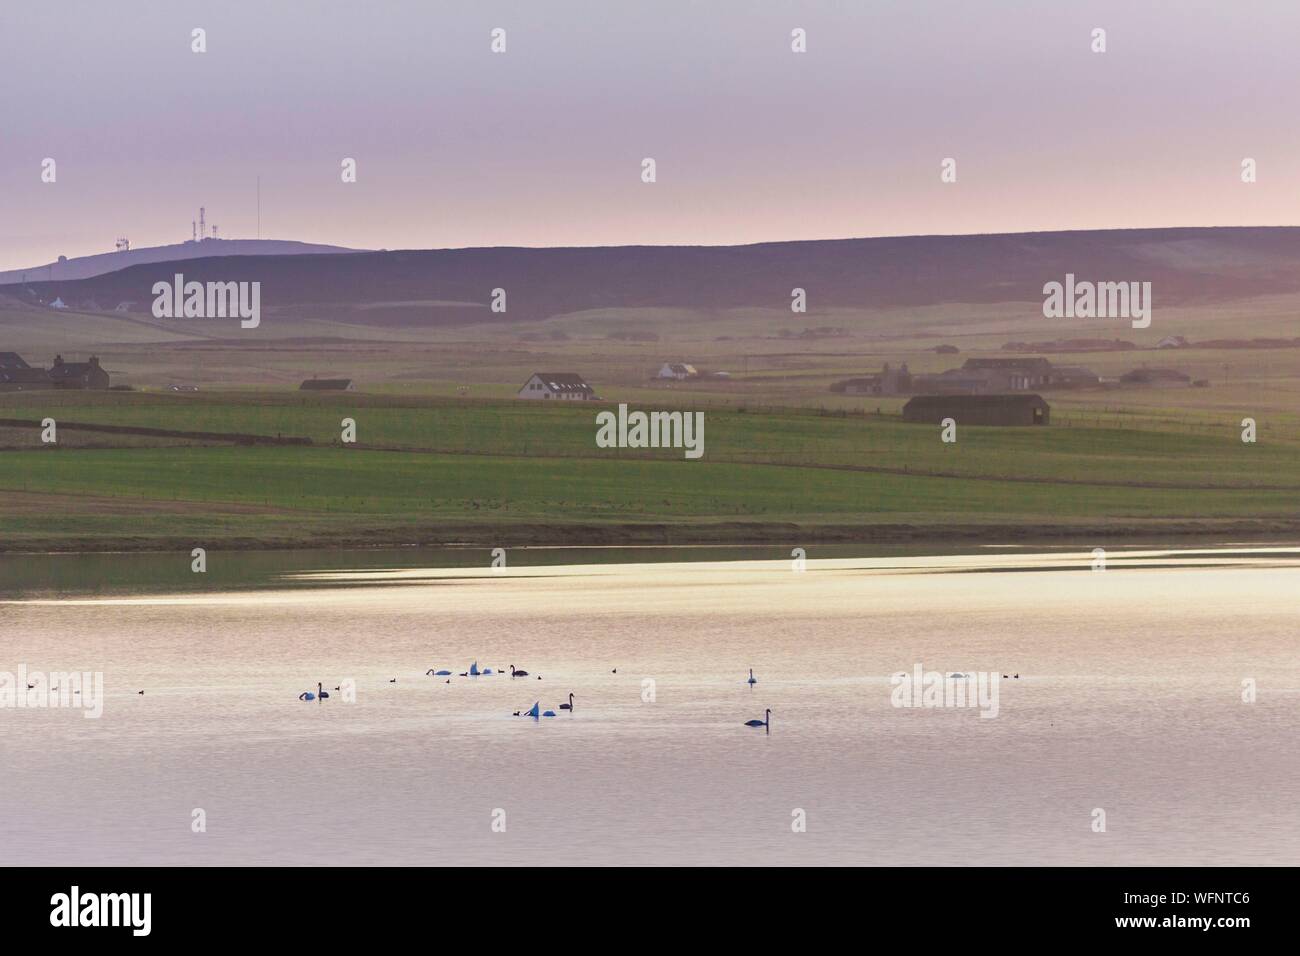 Royaume-uni, Ecosse, îles Orcades, Mainland, lever du soleil sur le Loch Harray de l'anneau de Shetlands, Coeur néolithique des Orcades, inscrite au Patrimoine Mondial de l'UNESCO Banque D'Images